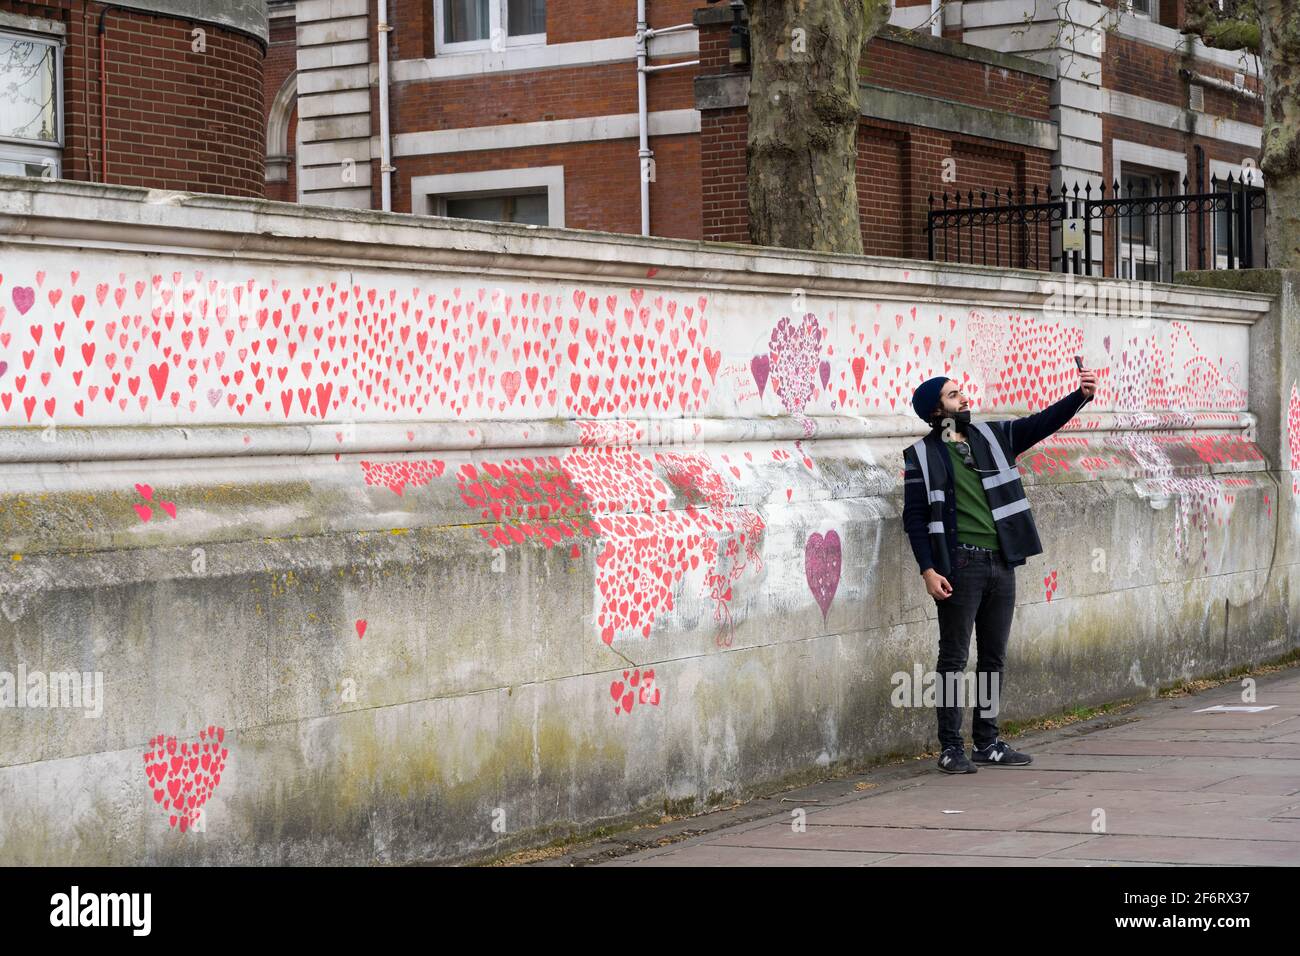 Un uomo prende un selfu sul muro commemorativo del Covid nazionale sulla riva sud di Londra Embankment, Inghilterra, Regno Unito Foto Stock